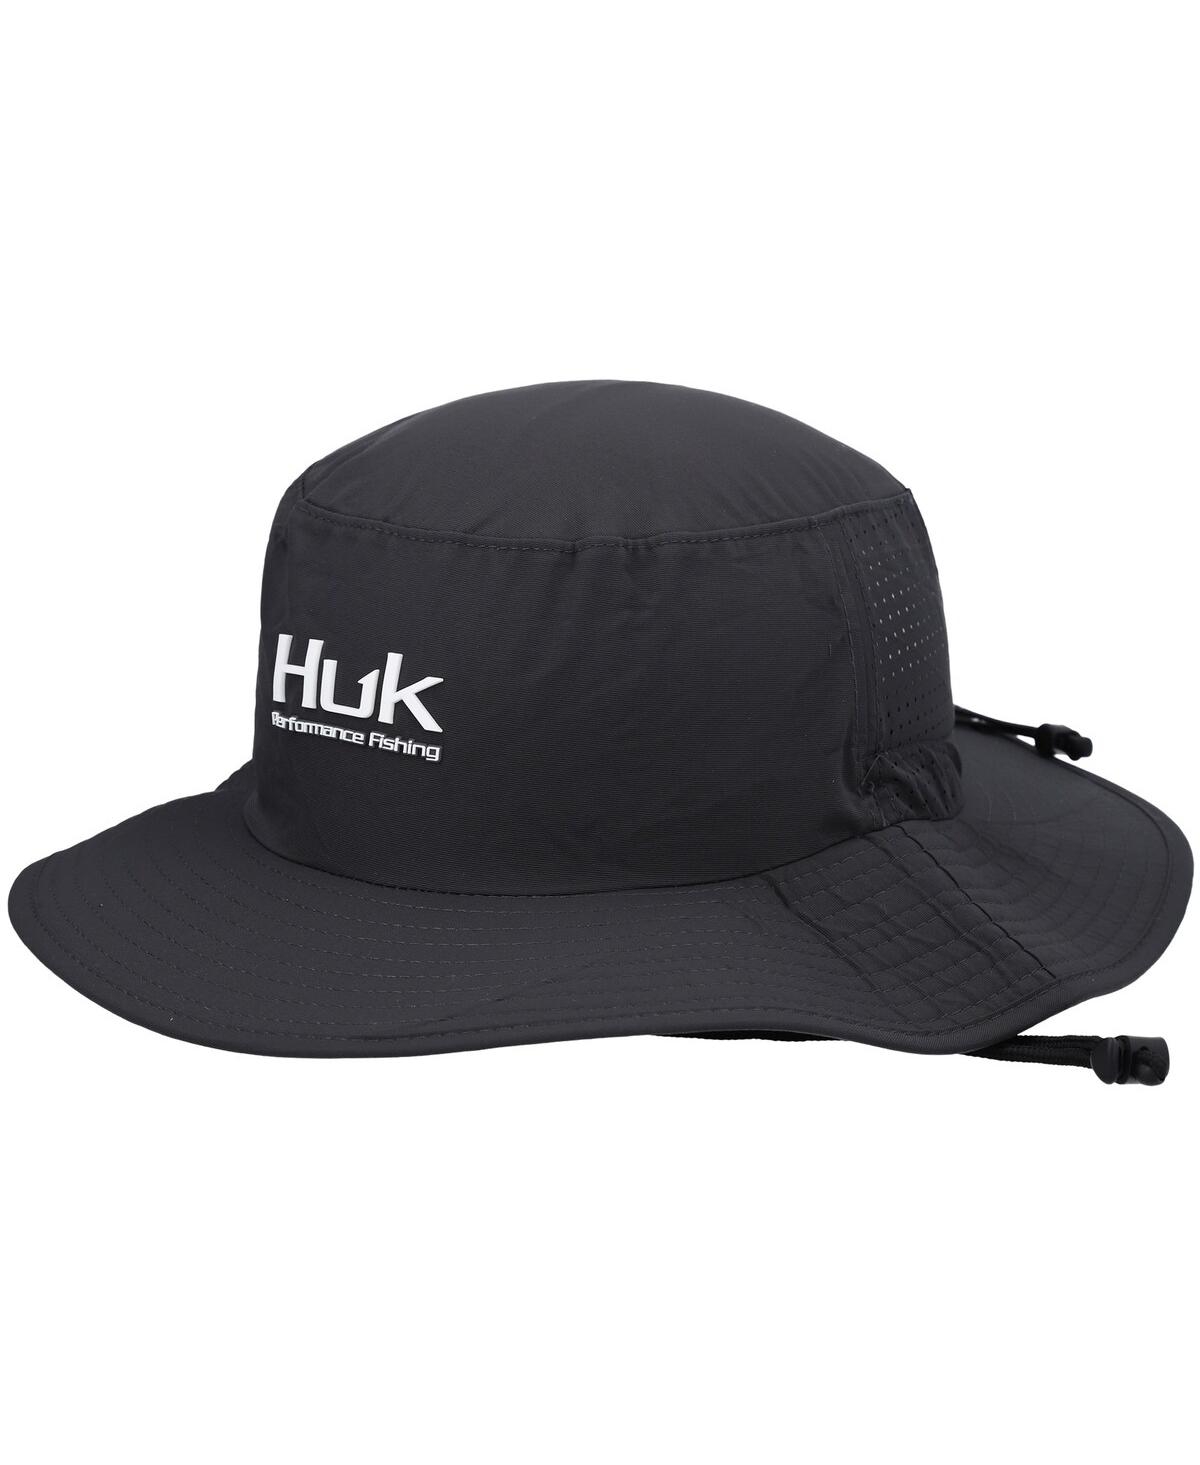 Men's Huk Graphite Solid Boonie Bucket Hat - Graphite